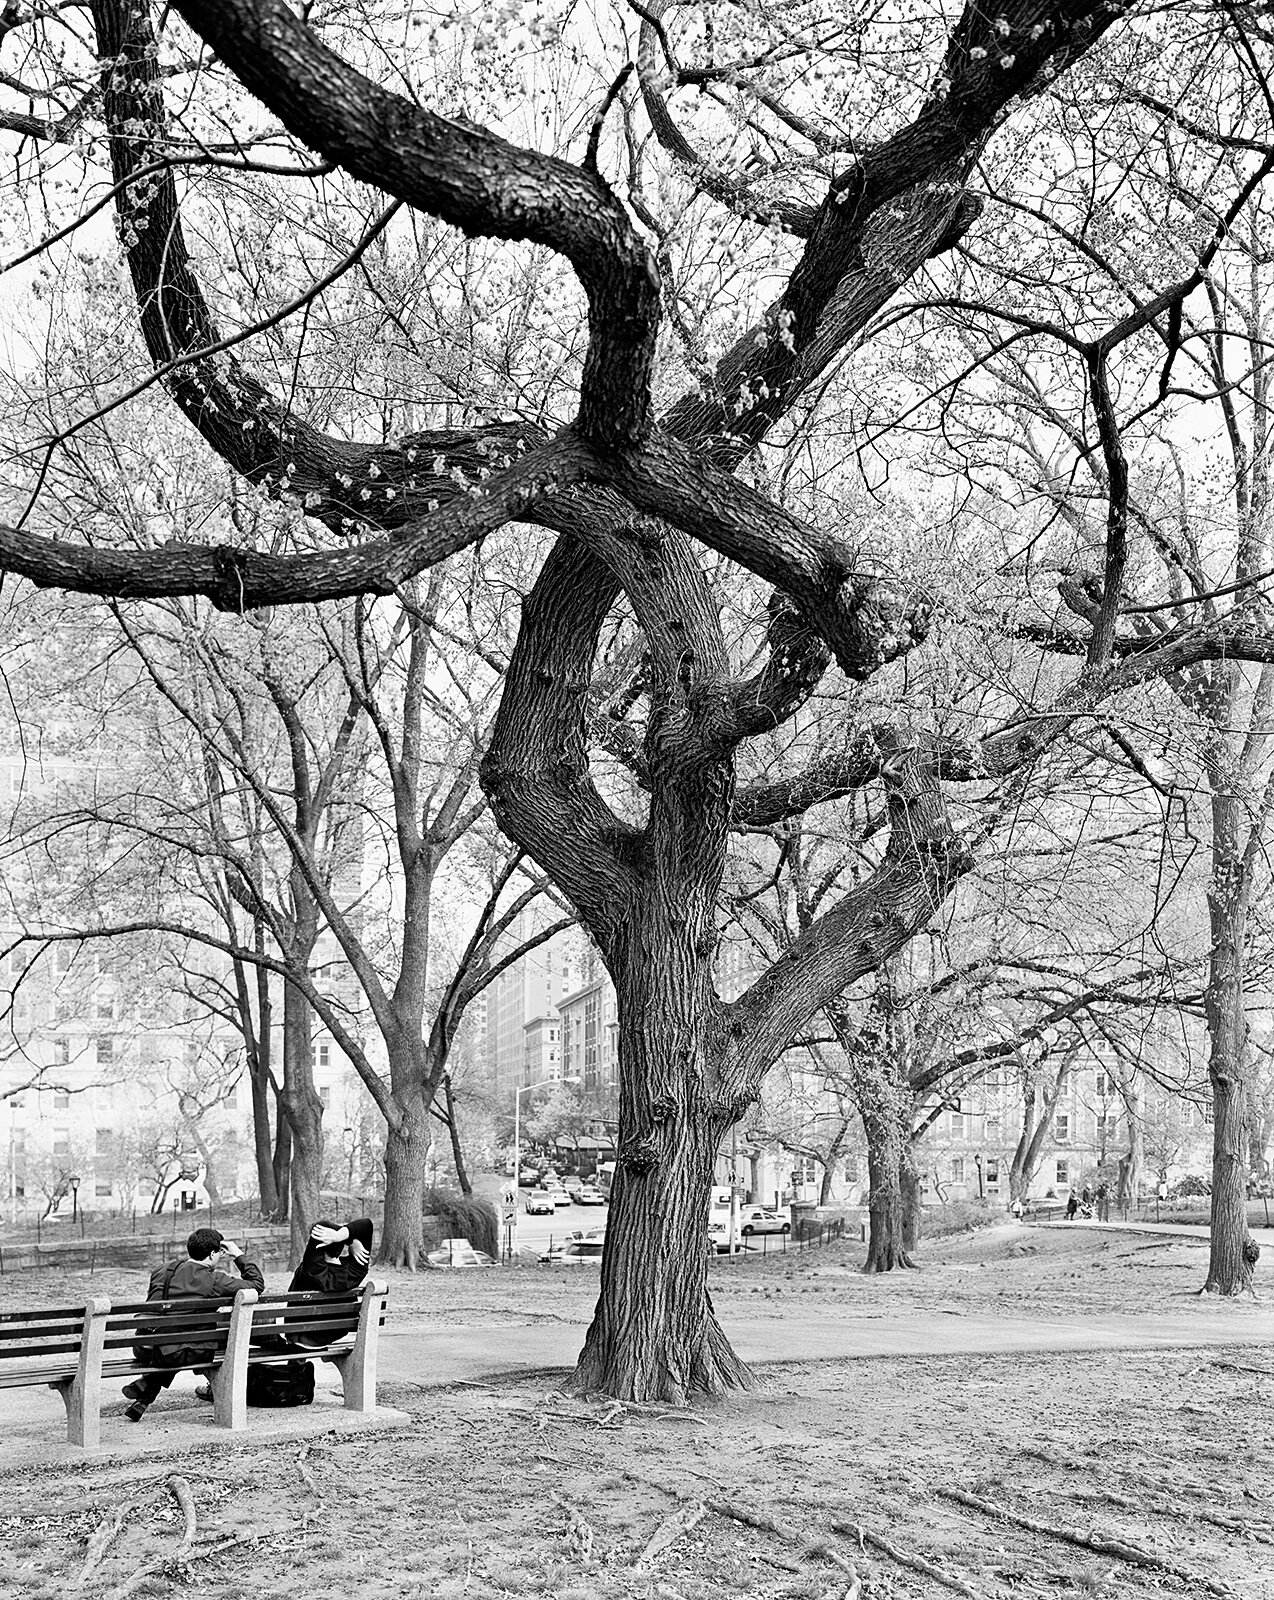  American Elm, Central Park, New York 2011 